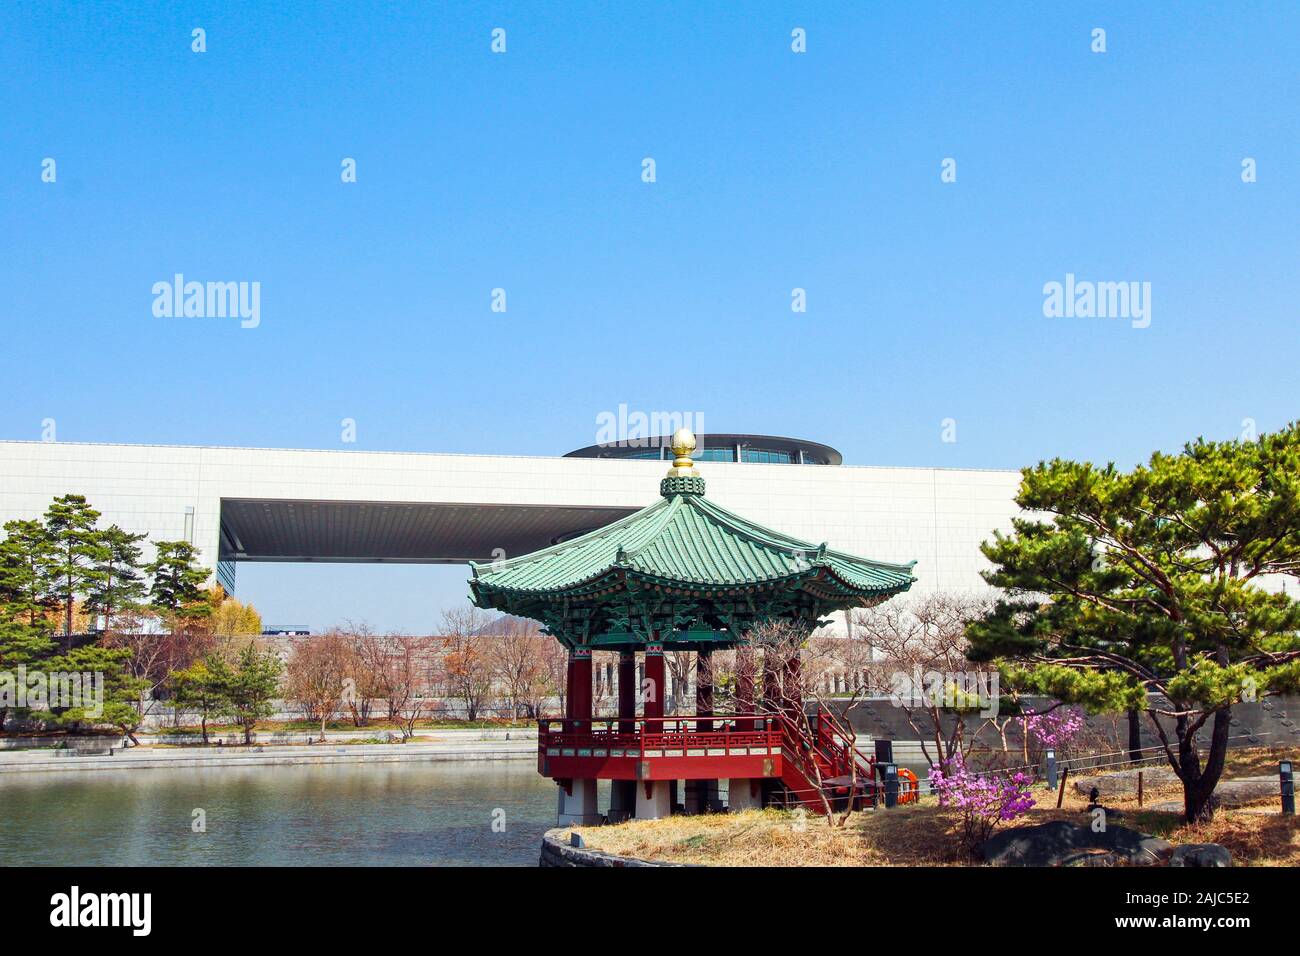 , Yongsan à Séoul, Corée du Sud 30 mars 2018 : Musée National derrière un pavillion par un étang à Séoul un jour de printemps. Banque D'Images